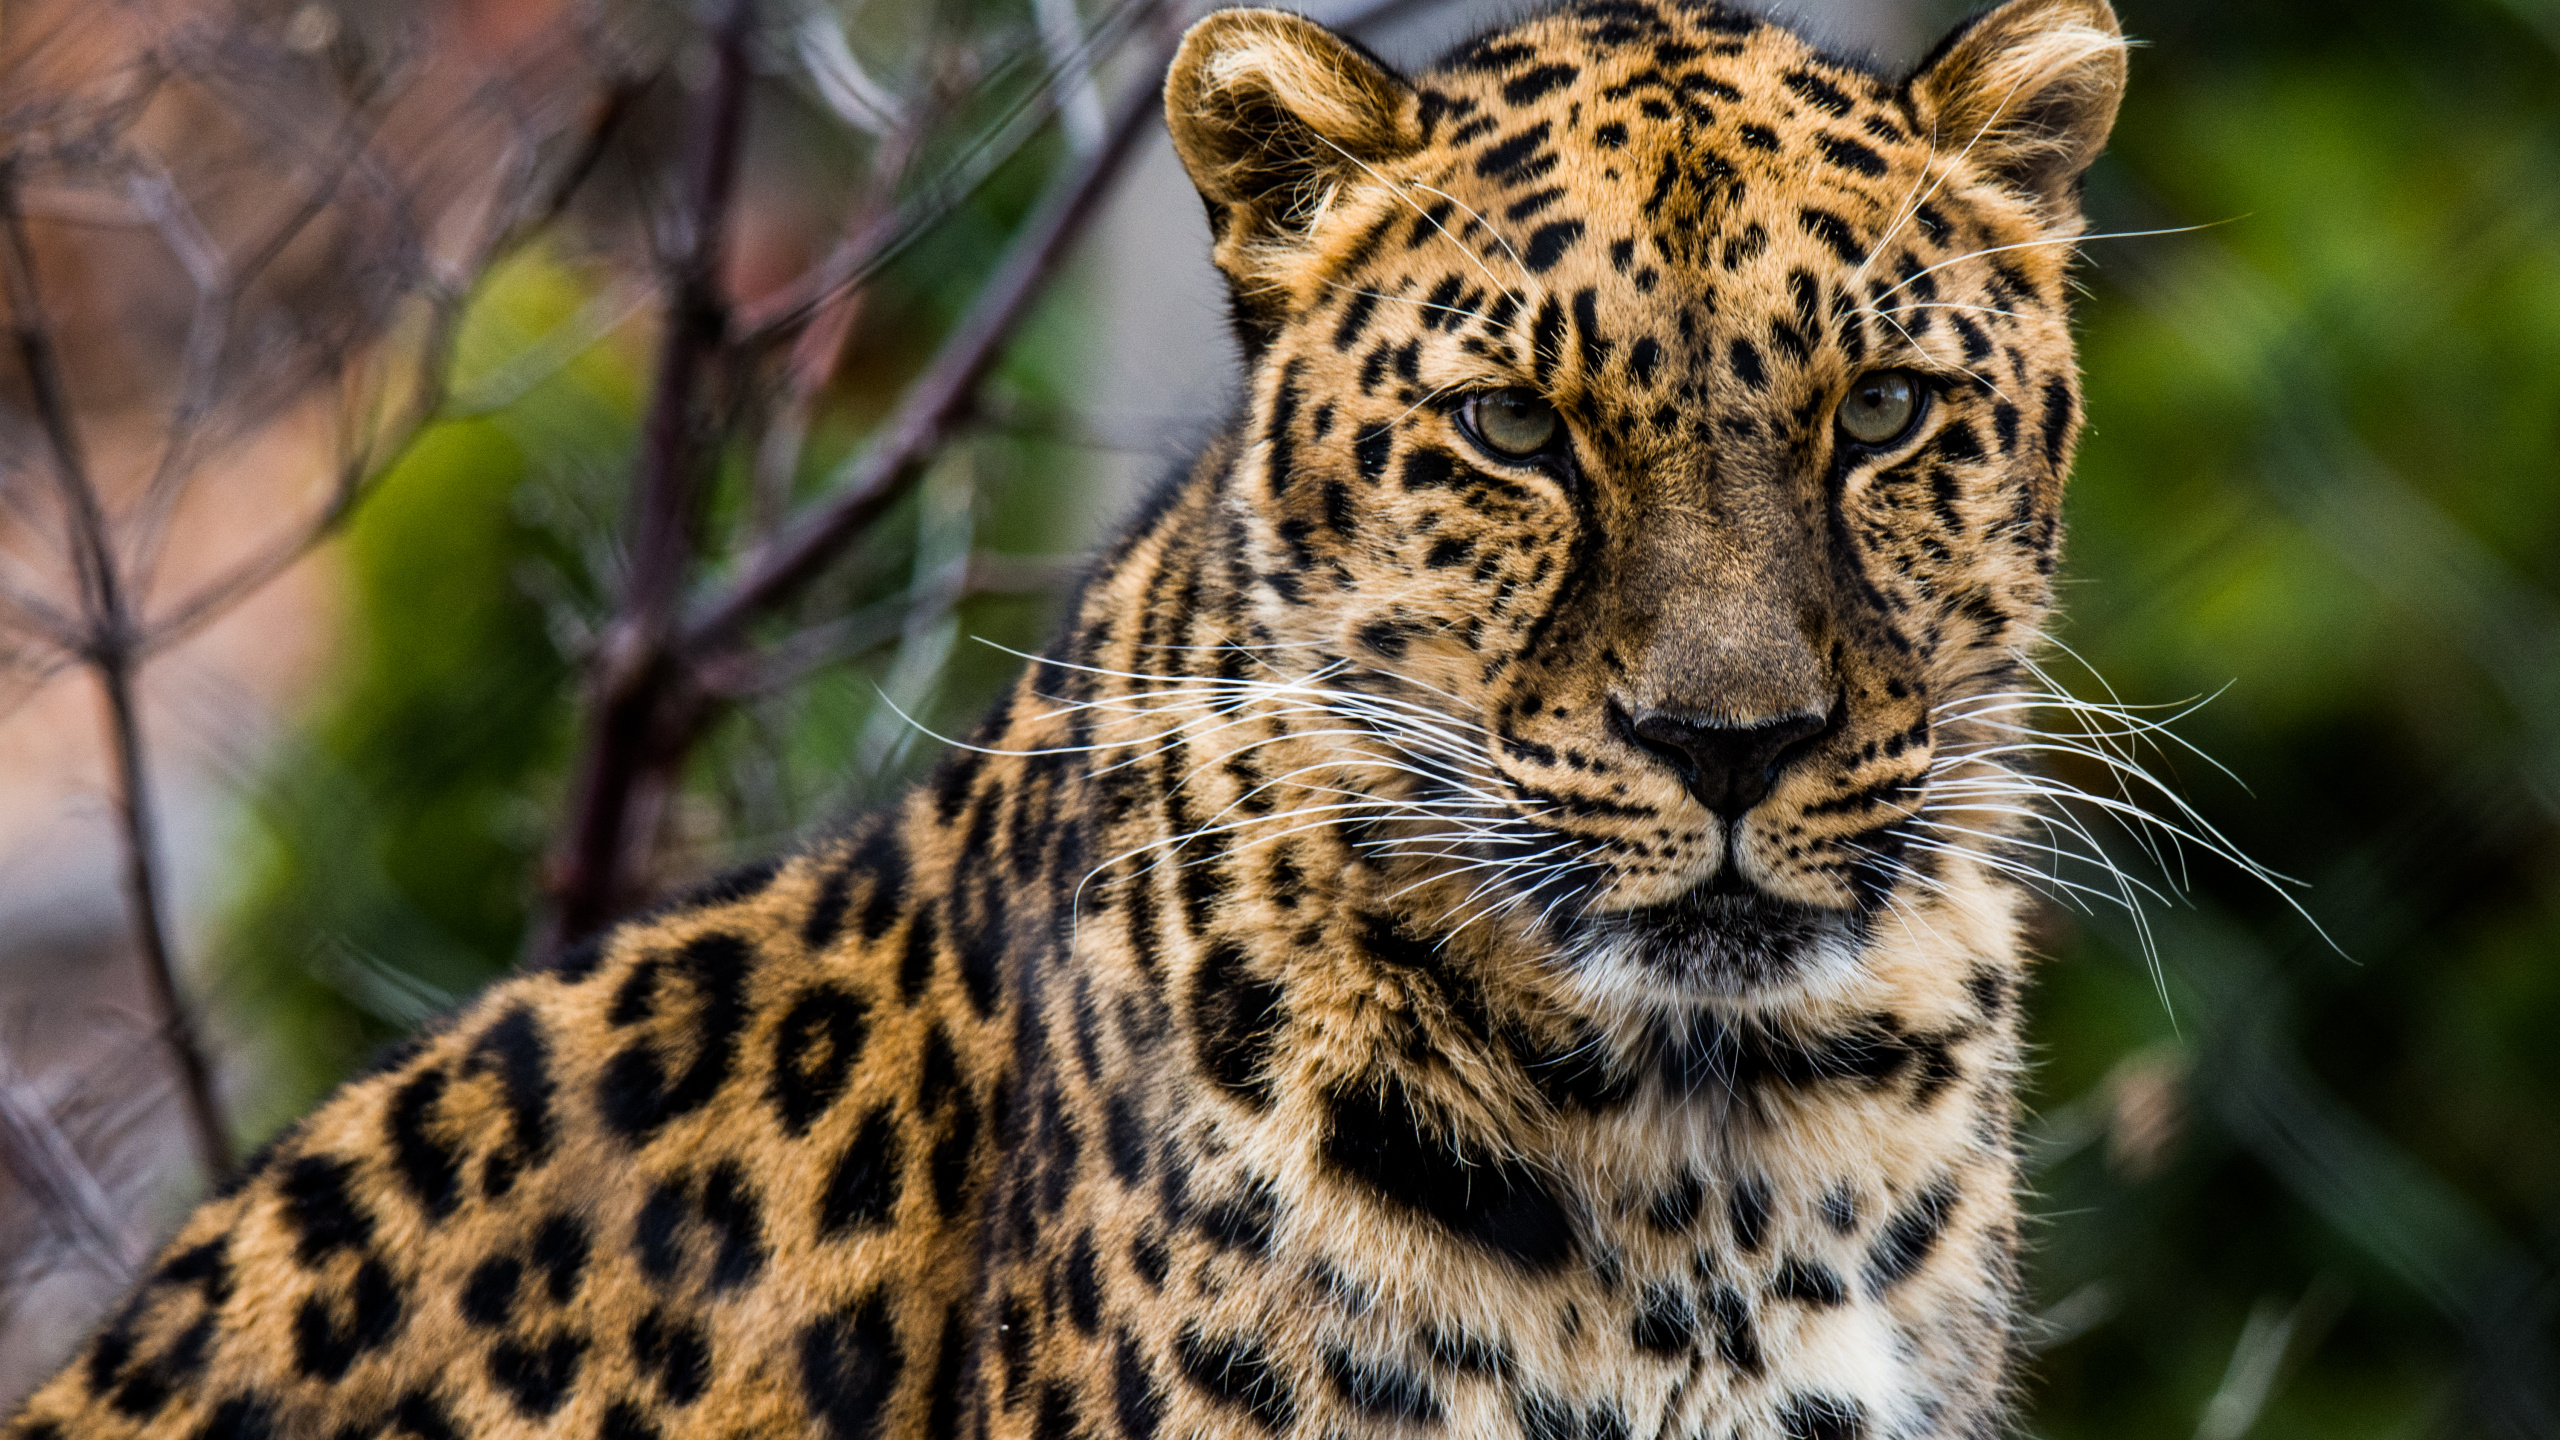 非洲豹, 猫科, 陆地动物, 野生动物, 胡须 壁纸 2560x1440 允许